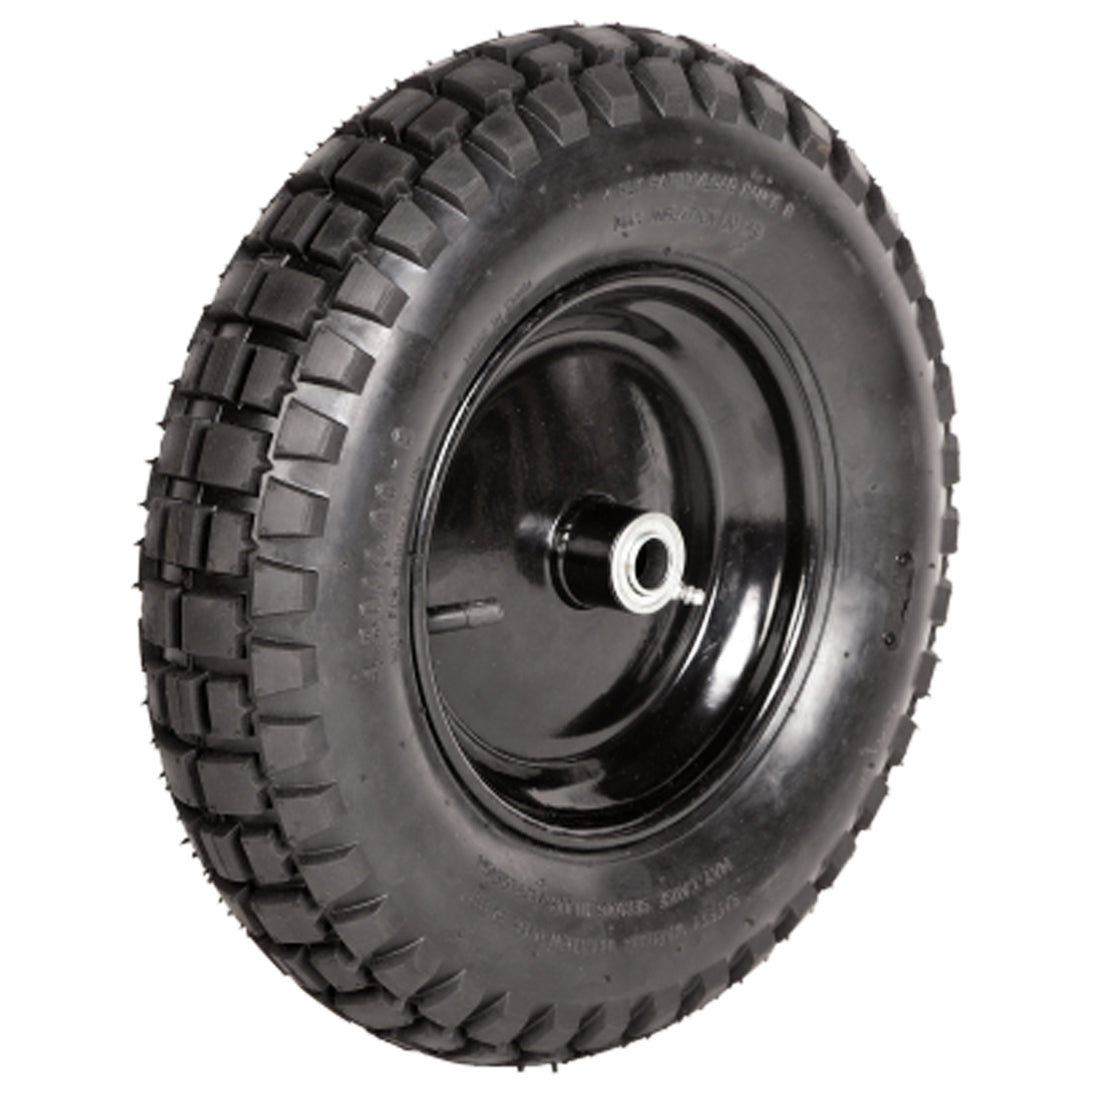 Conjunto de rueda Sterling, neumático con banda de rodadura nudosa, 4 capas